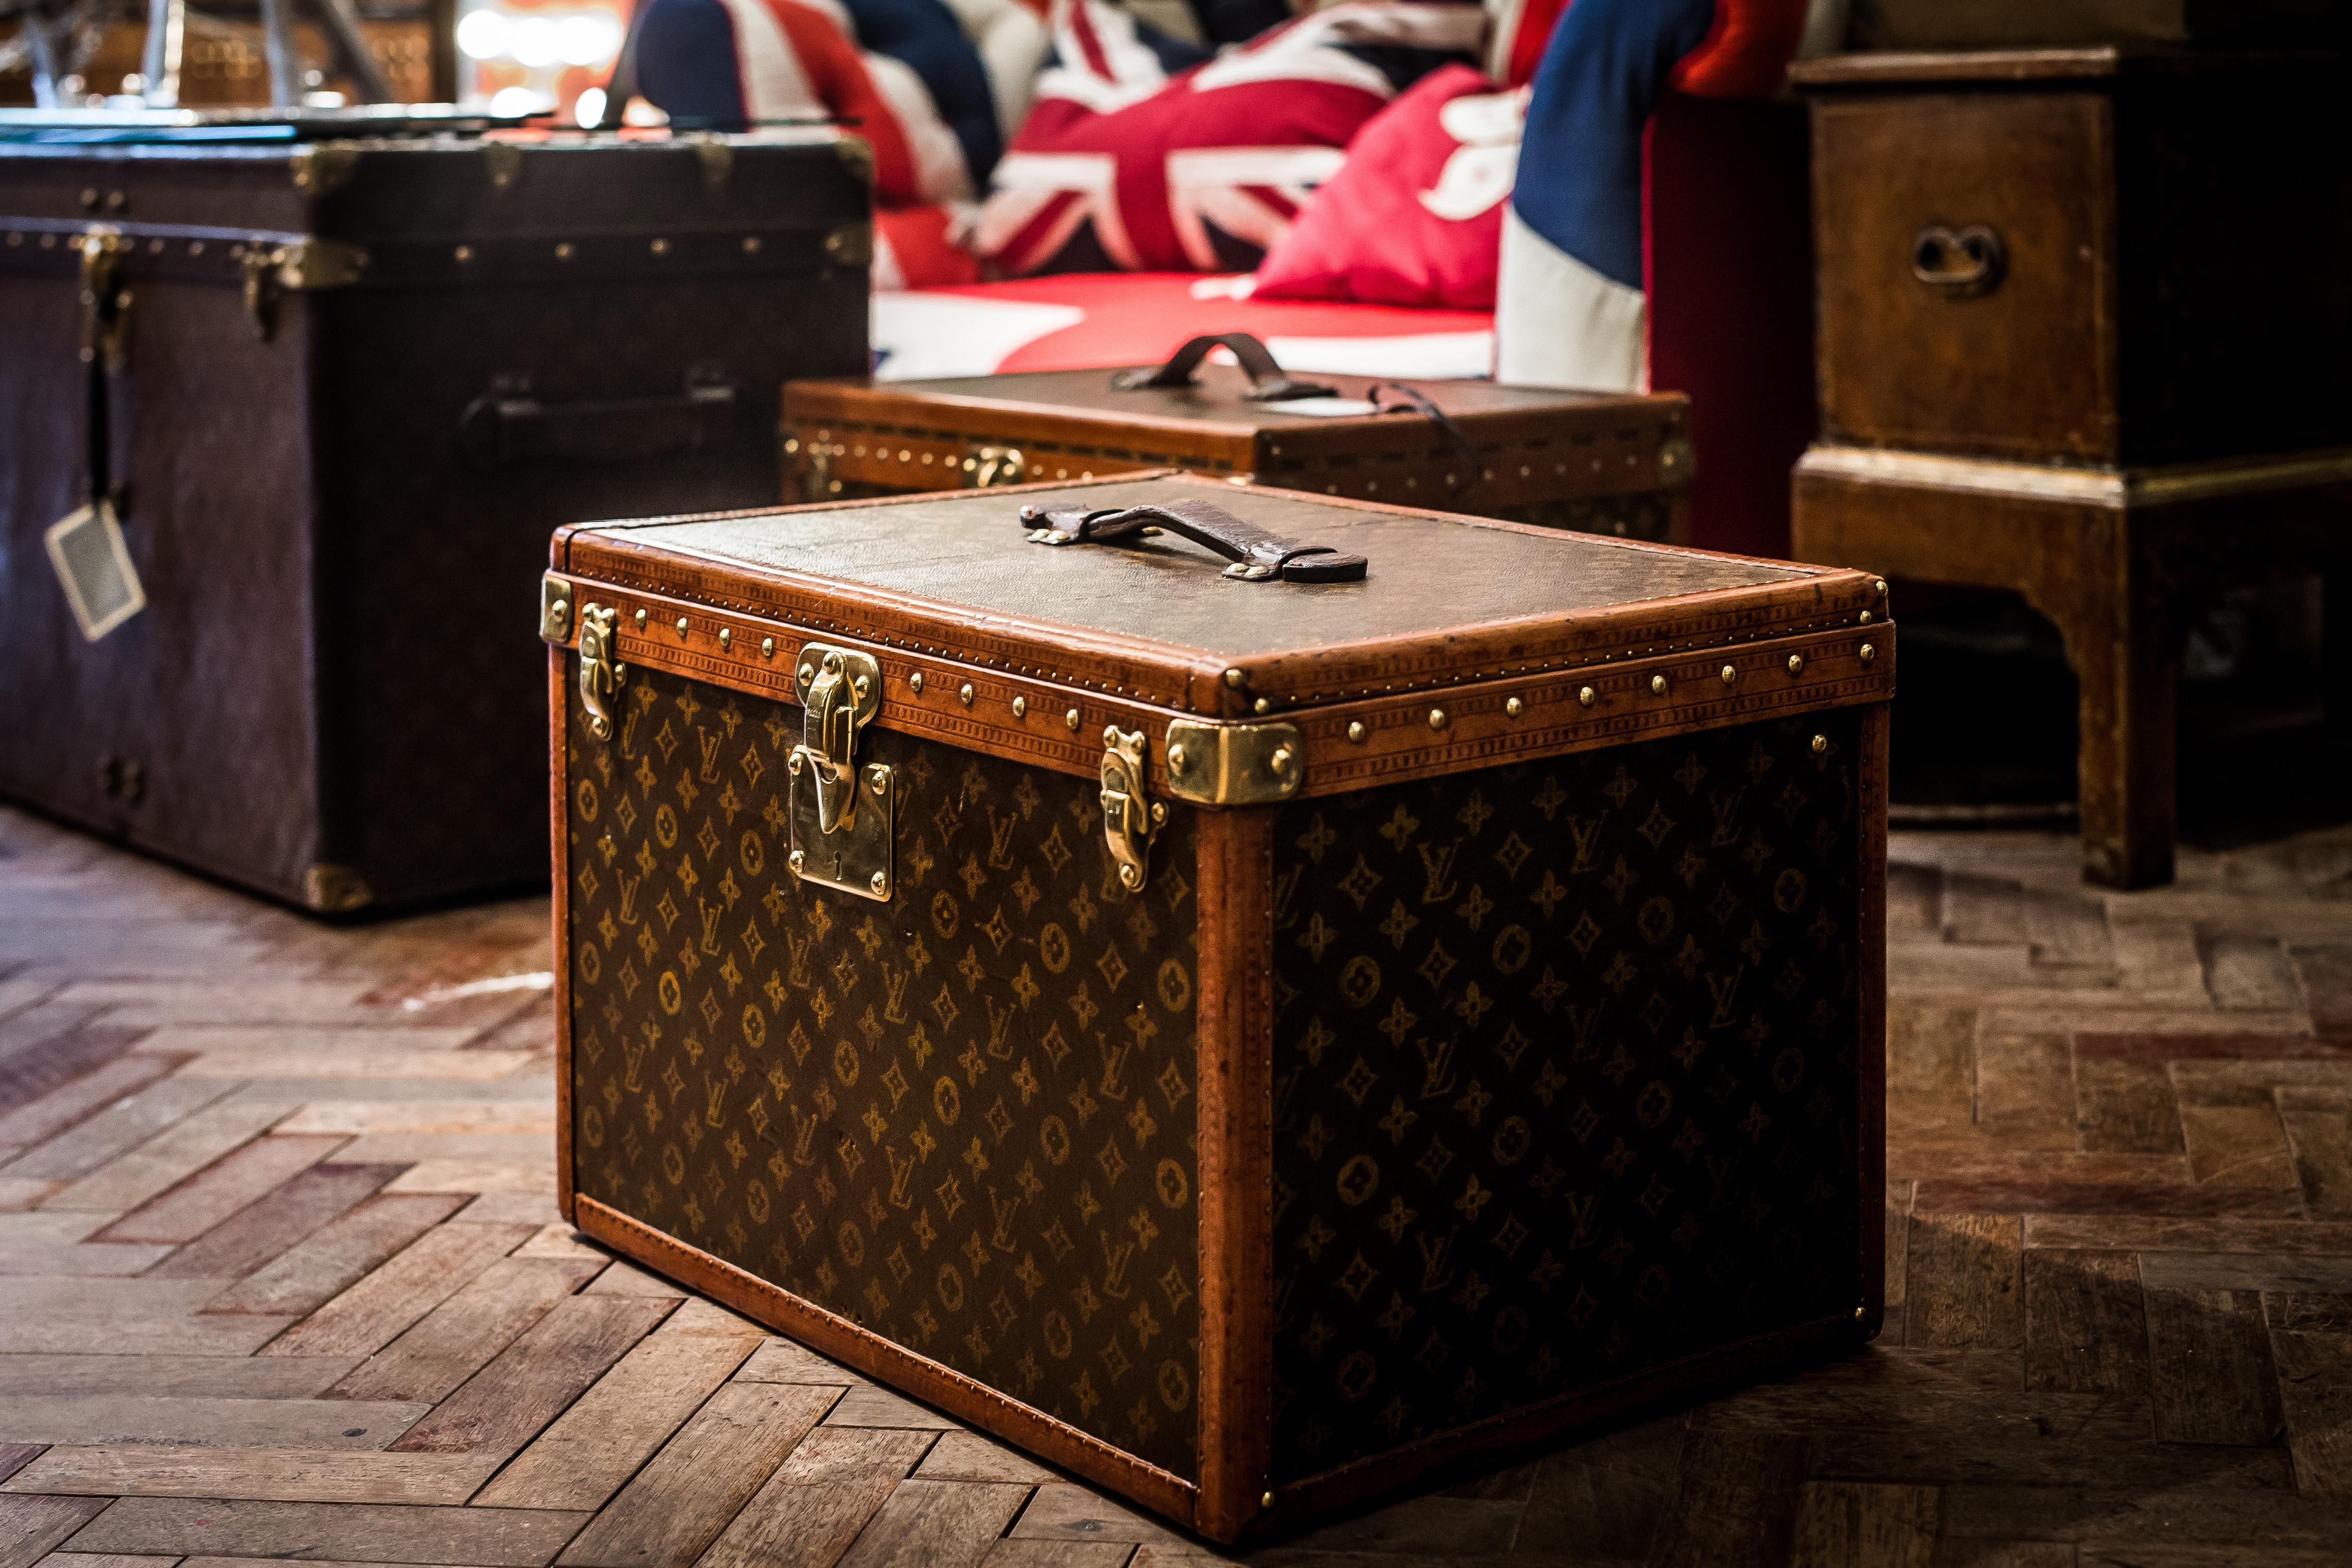 Ein schöner Hut Koffer, der vollständig durch die Unterschrift Schablone monogrammiert Leinwand von Louis Vuitton ca. 1930er Jahren abgedeckt ist. 

Er verfügt über folgende Merkmale:
- Lozine trimmen, 
- Beschläge aus Messing. 
- einen Ledergriff